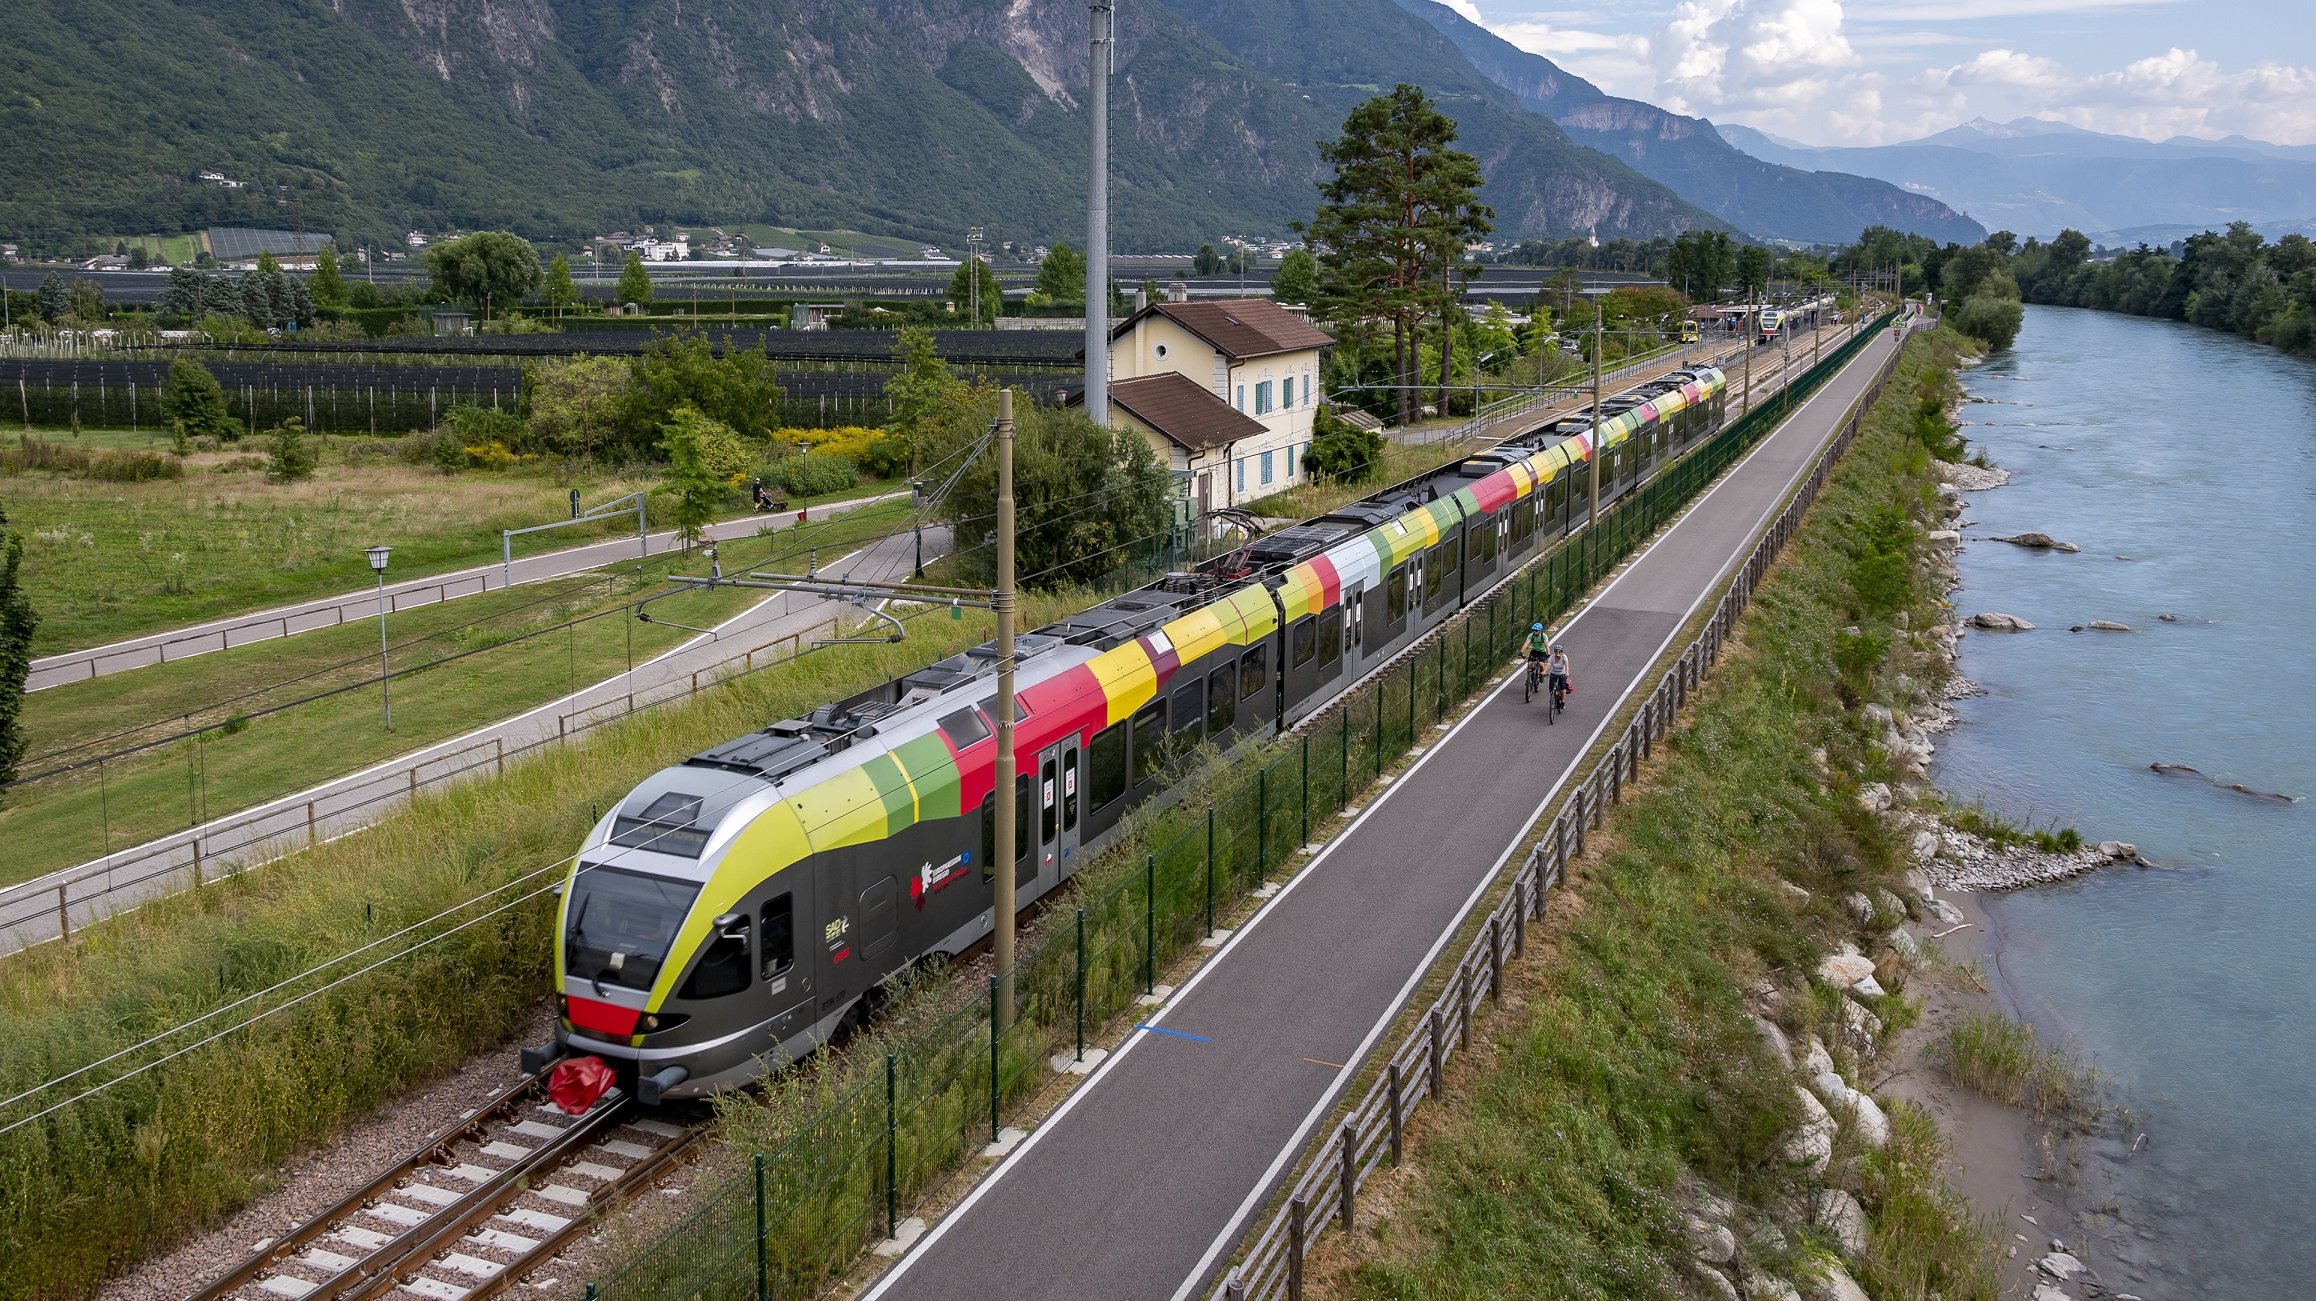 Bolzano - Merano railway line